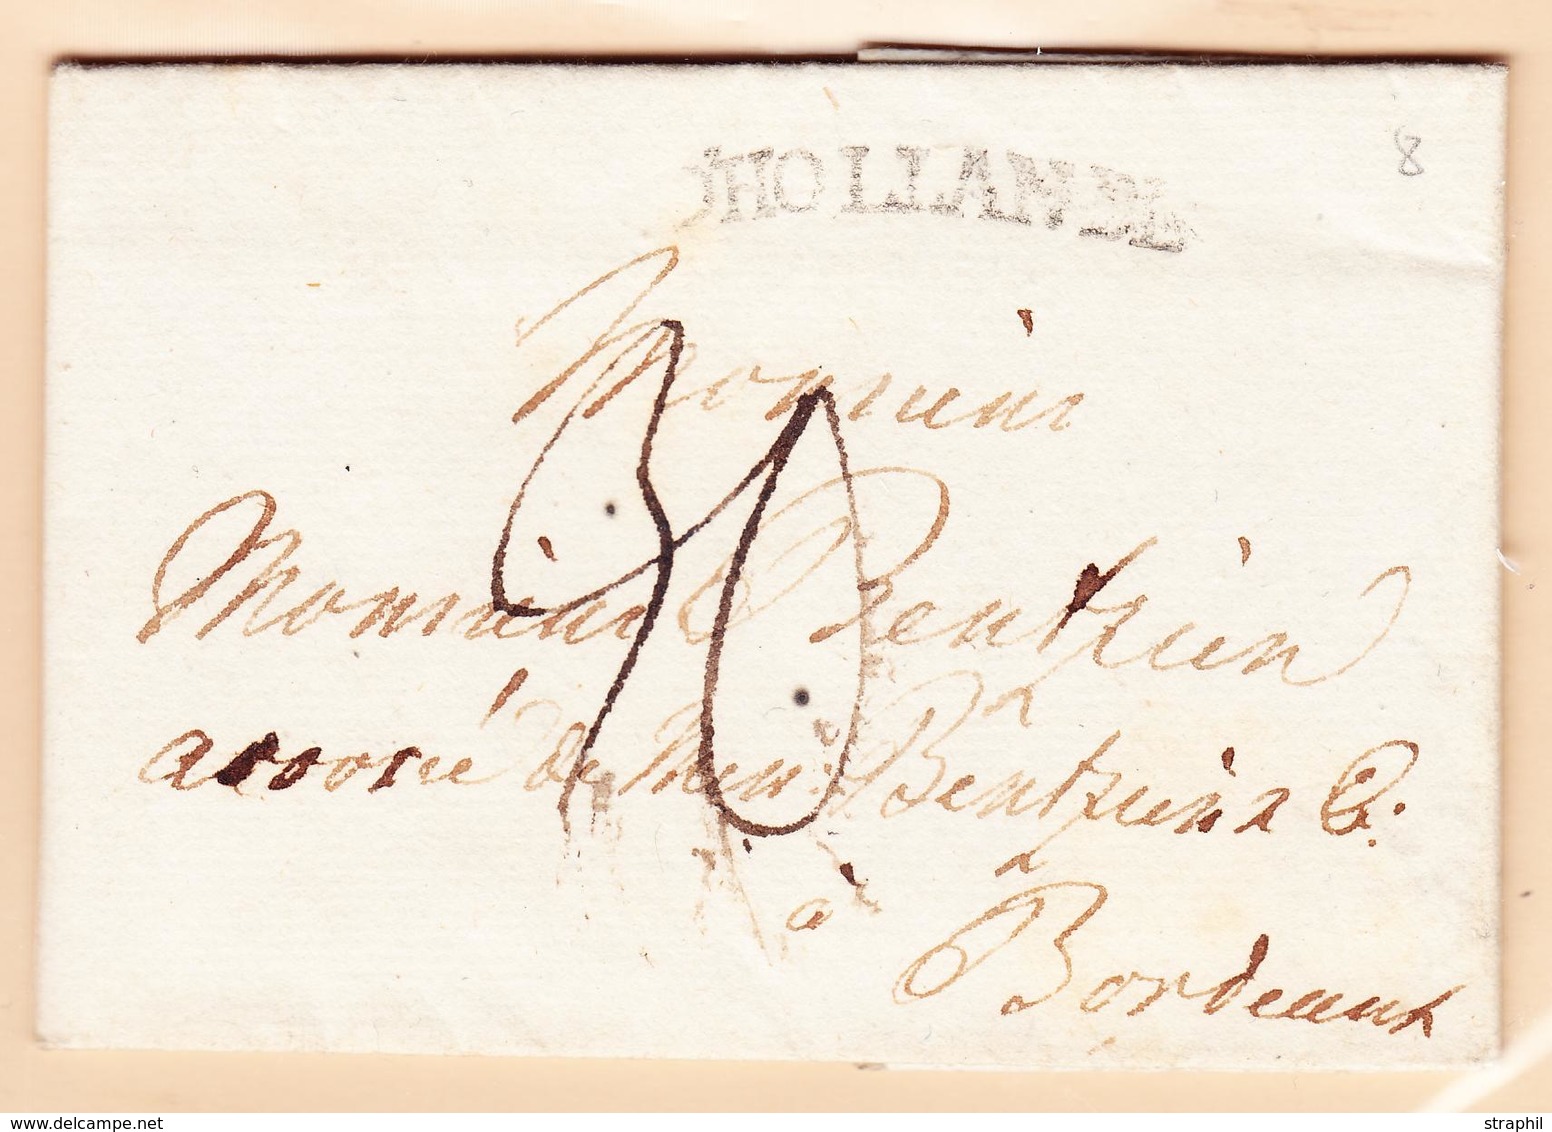 LAC PAYS-BAS - LAC - D'HOLLANDE - 1770 - Pr Bordeaux - Taxe 30 - TB - Briefe U. Dokumente